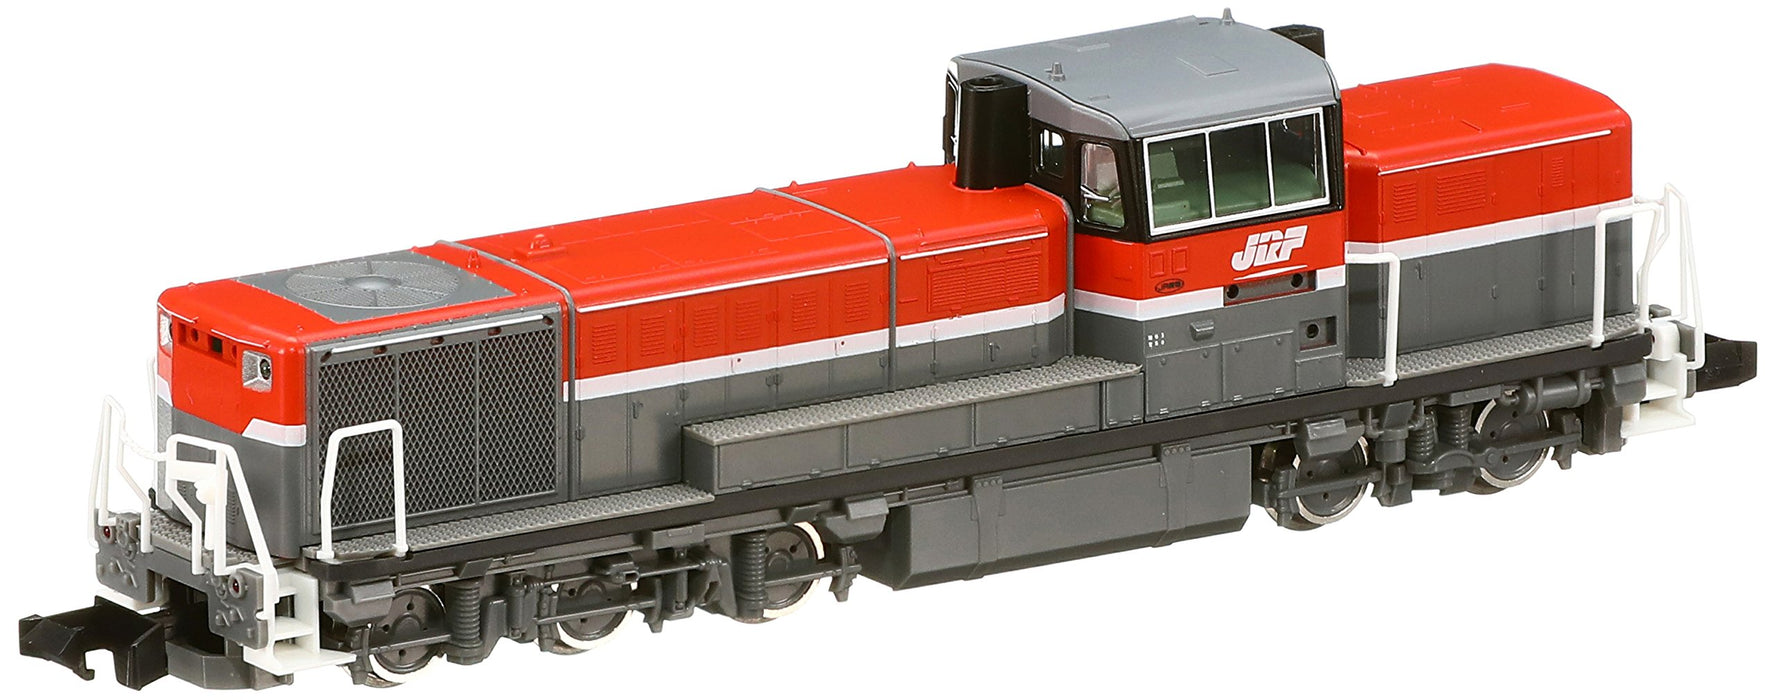 Locomotive diesel Tomytec Tomix N Gauge DE10 1000 - JR Freight modèle 2239 nouvellement mis à jour